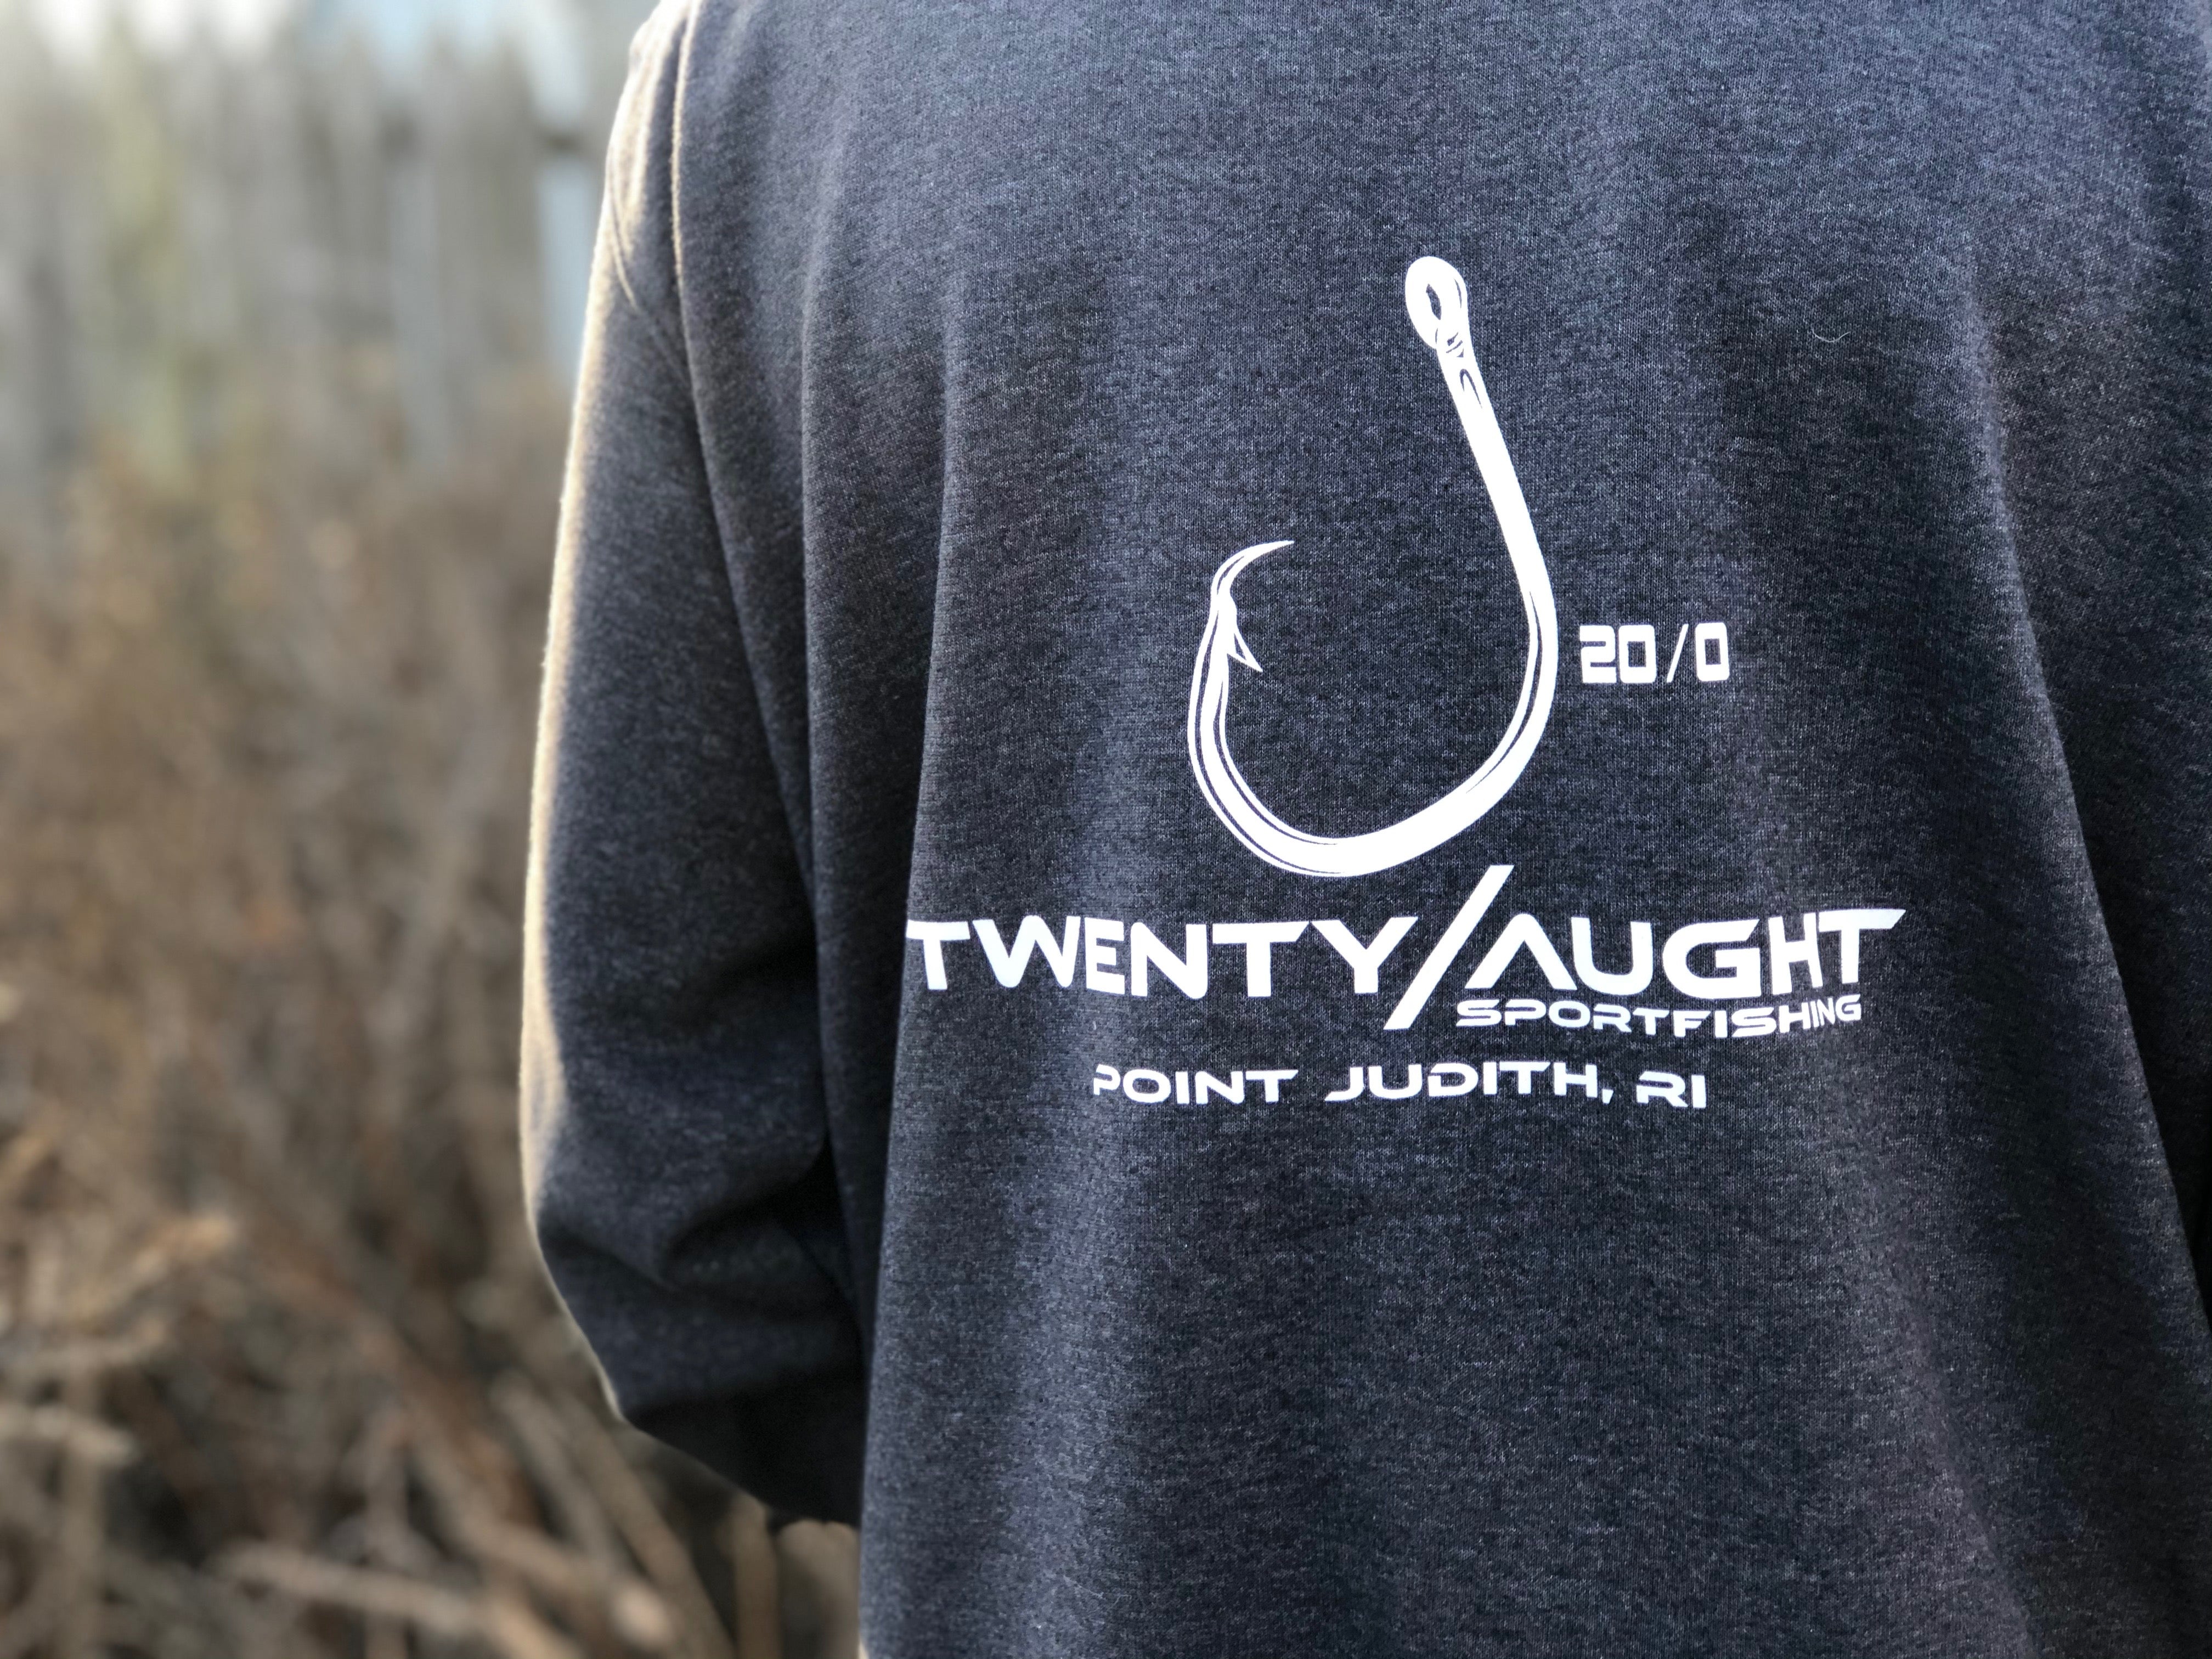 Carhartt Sportfishing Sweatshirt